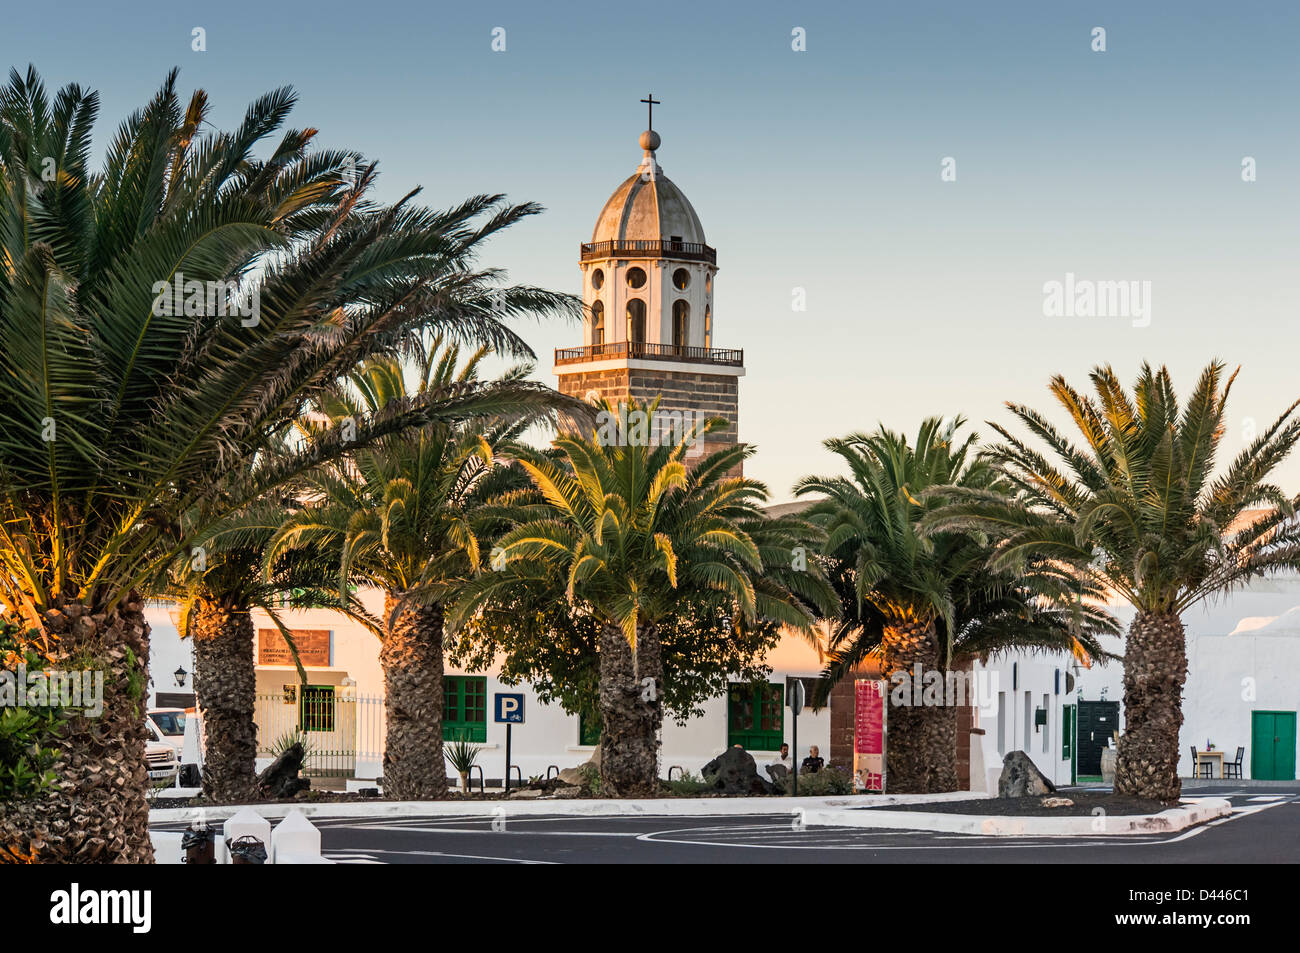 L'église Nuestra Señora de Guadalupe, Teguise, Lanzarote, îles Canaries, Espagne Banque D'Images